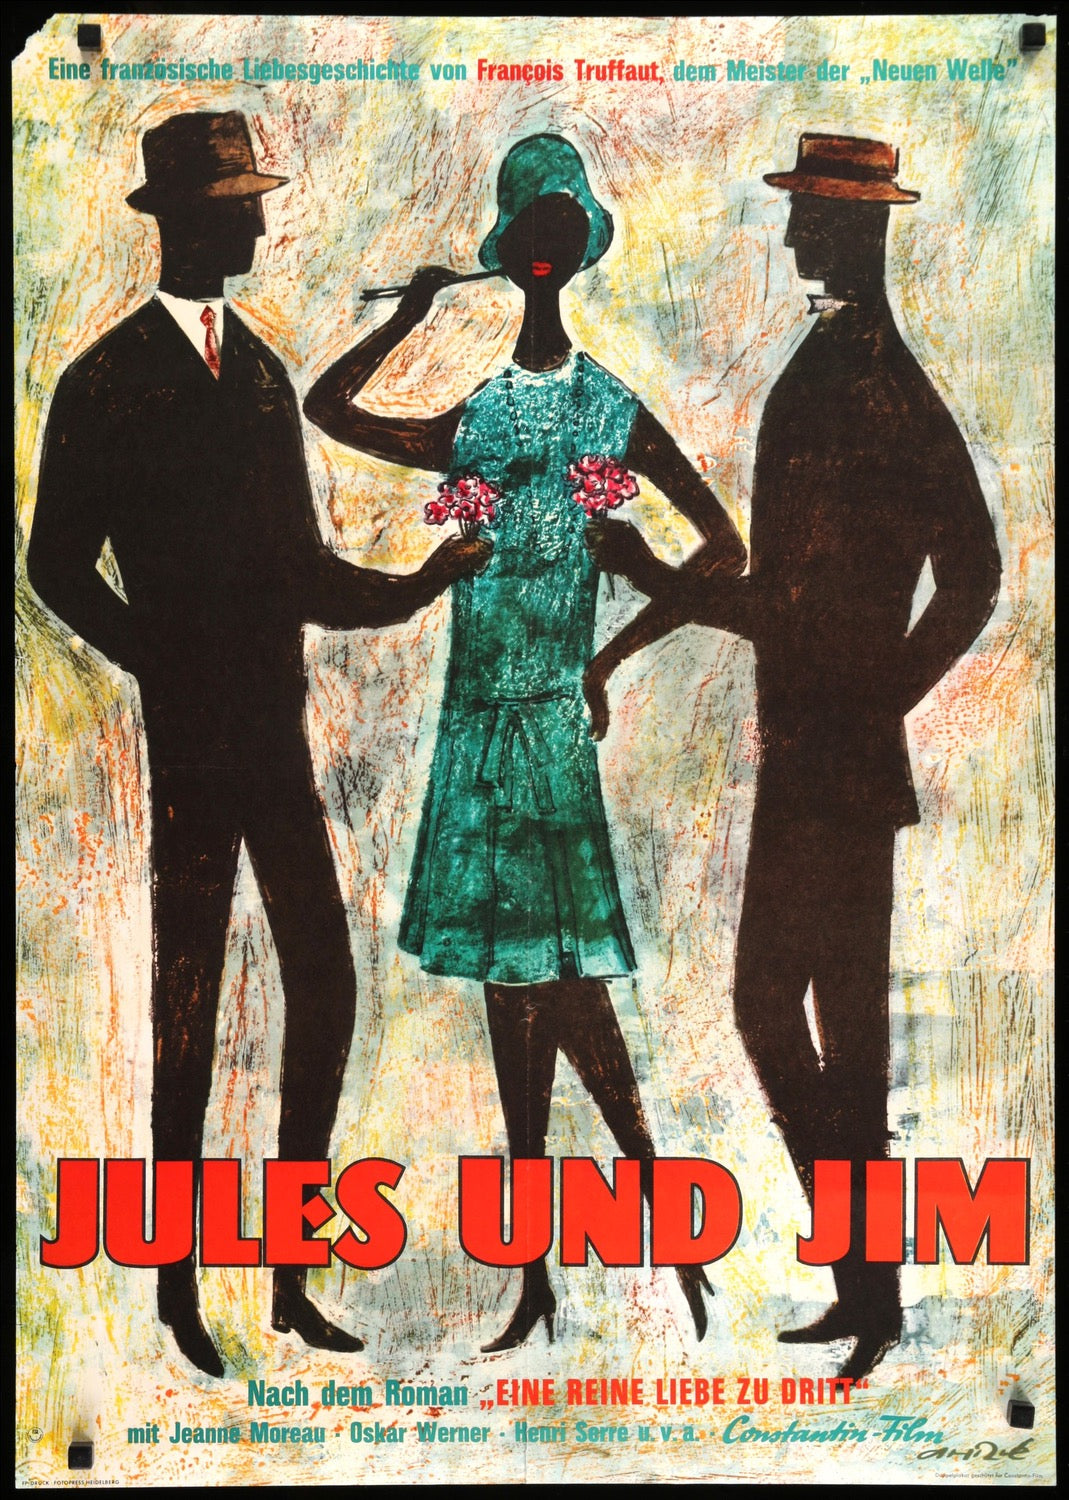 Jules and Jim (1962) original movie poster for sale at Original Film Art